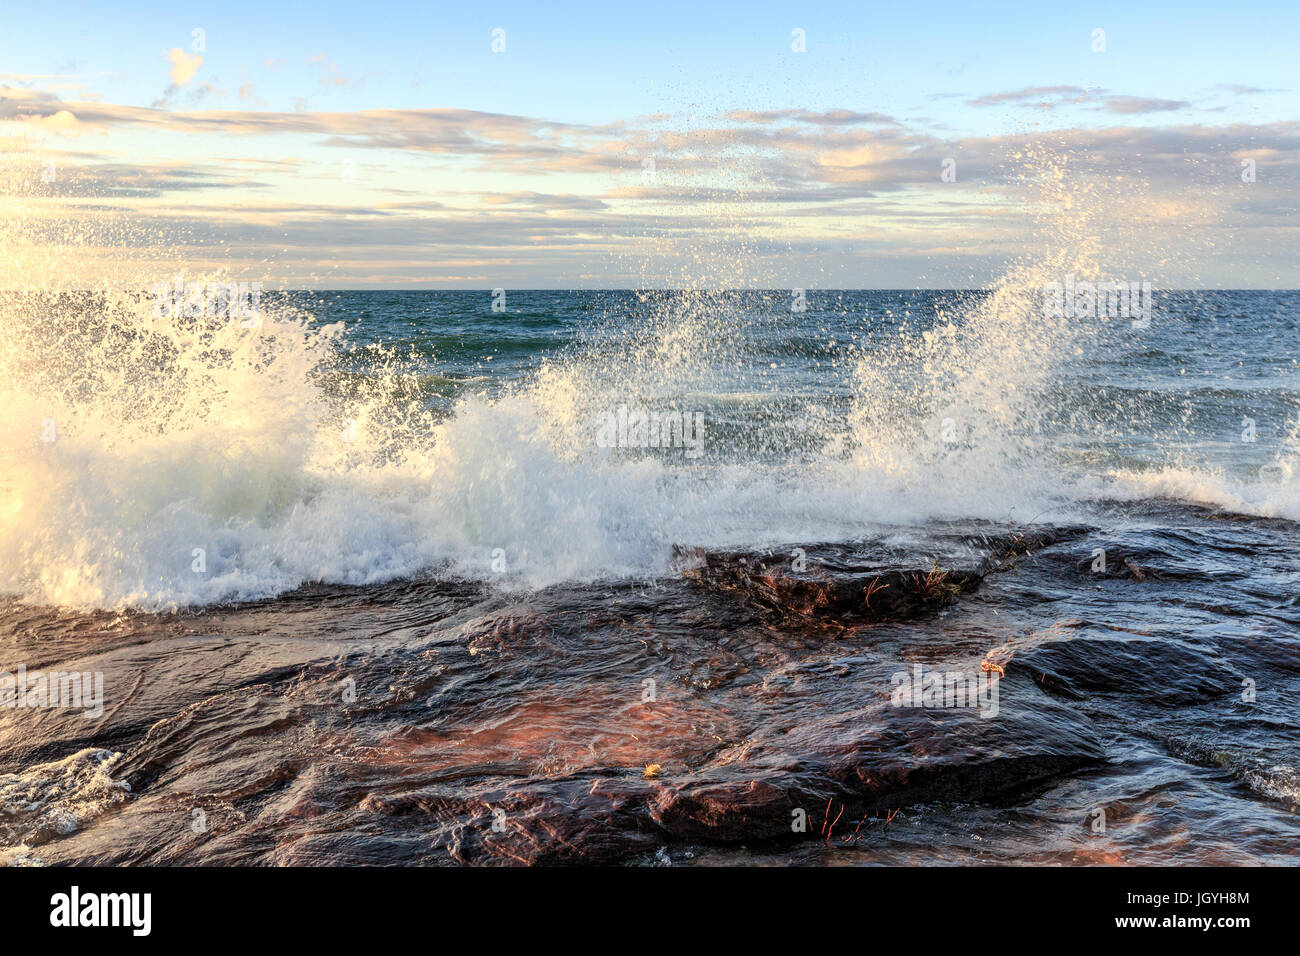 Le fracas des vagues sur le lac Supérieur à Pictured Rocks National Lakeshore, dans le nord de la péninsule du Michigan, à Munising Banque D'Images